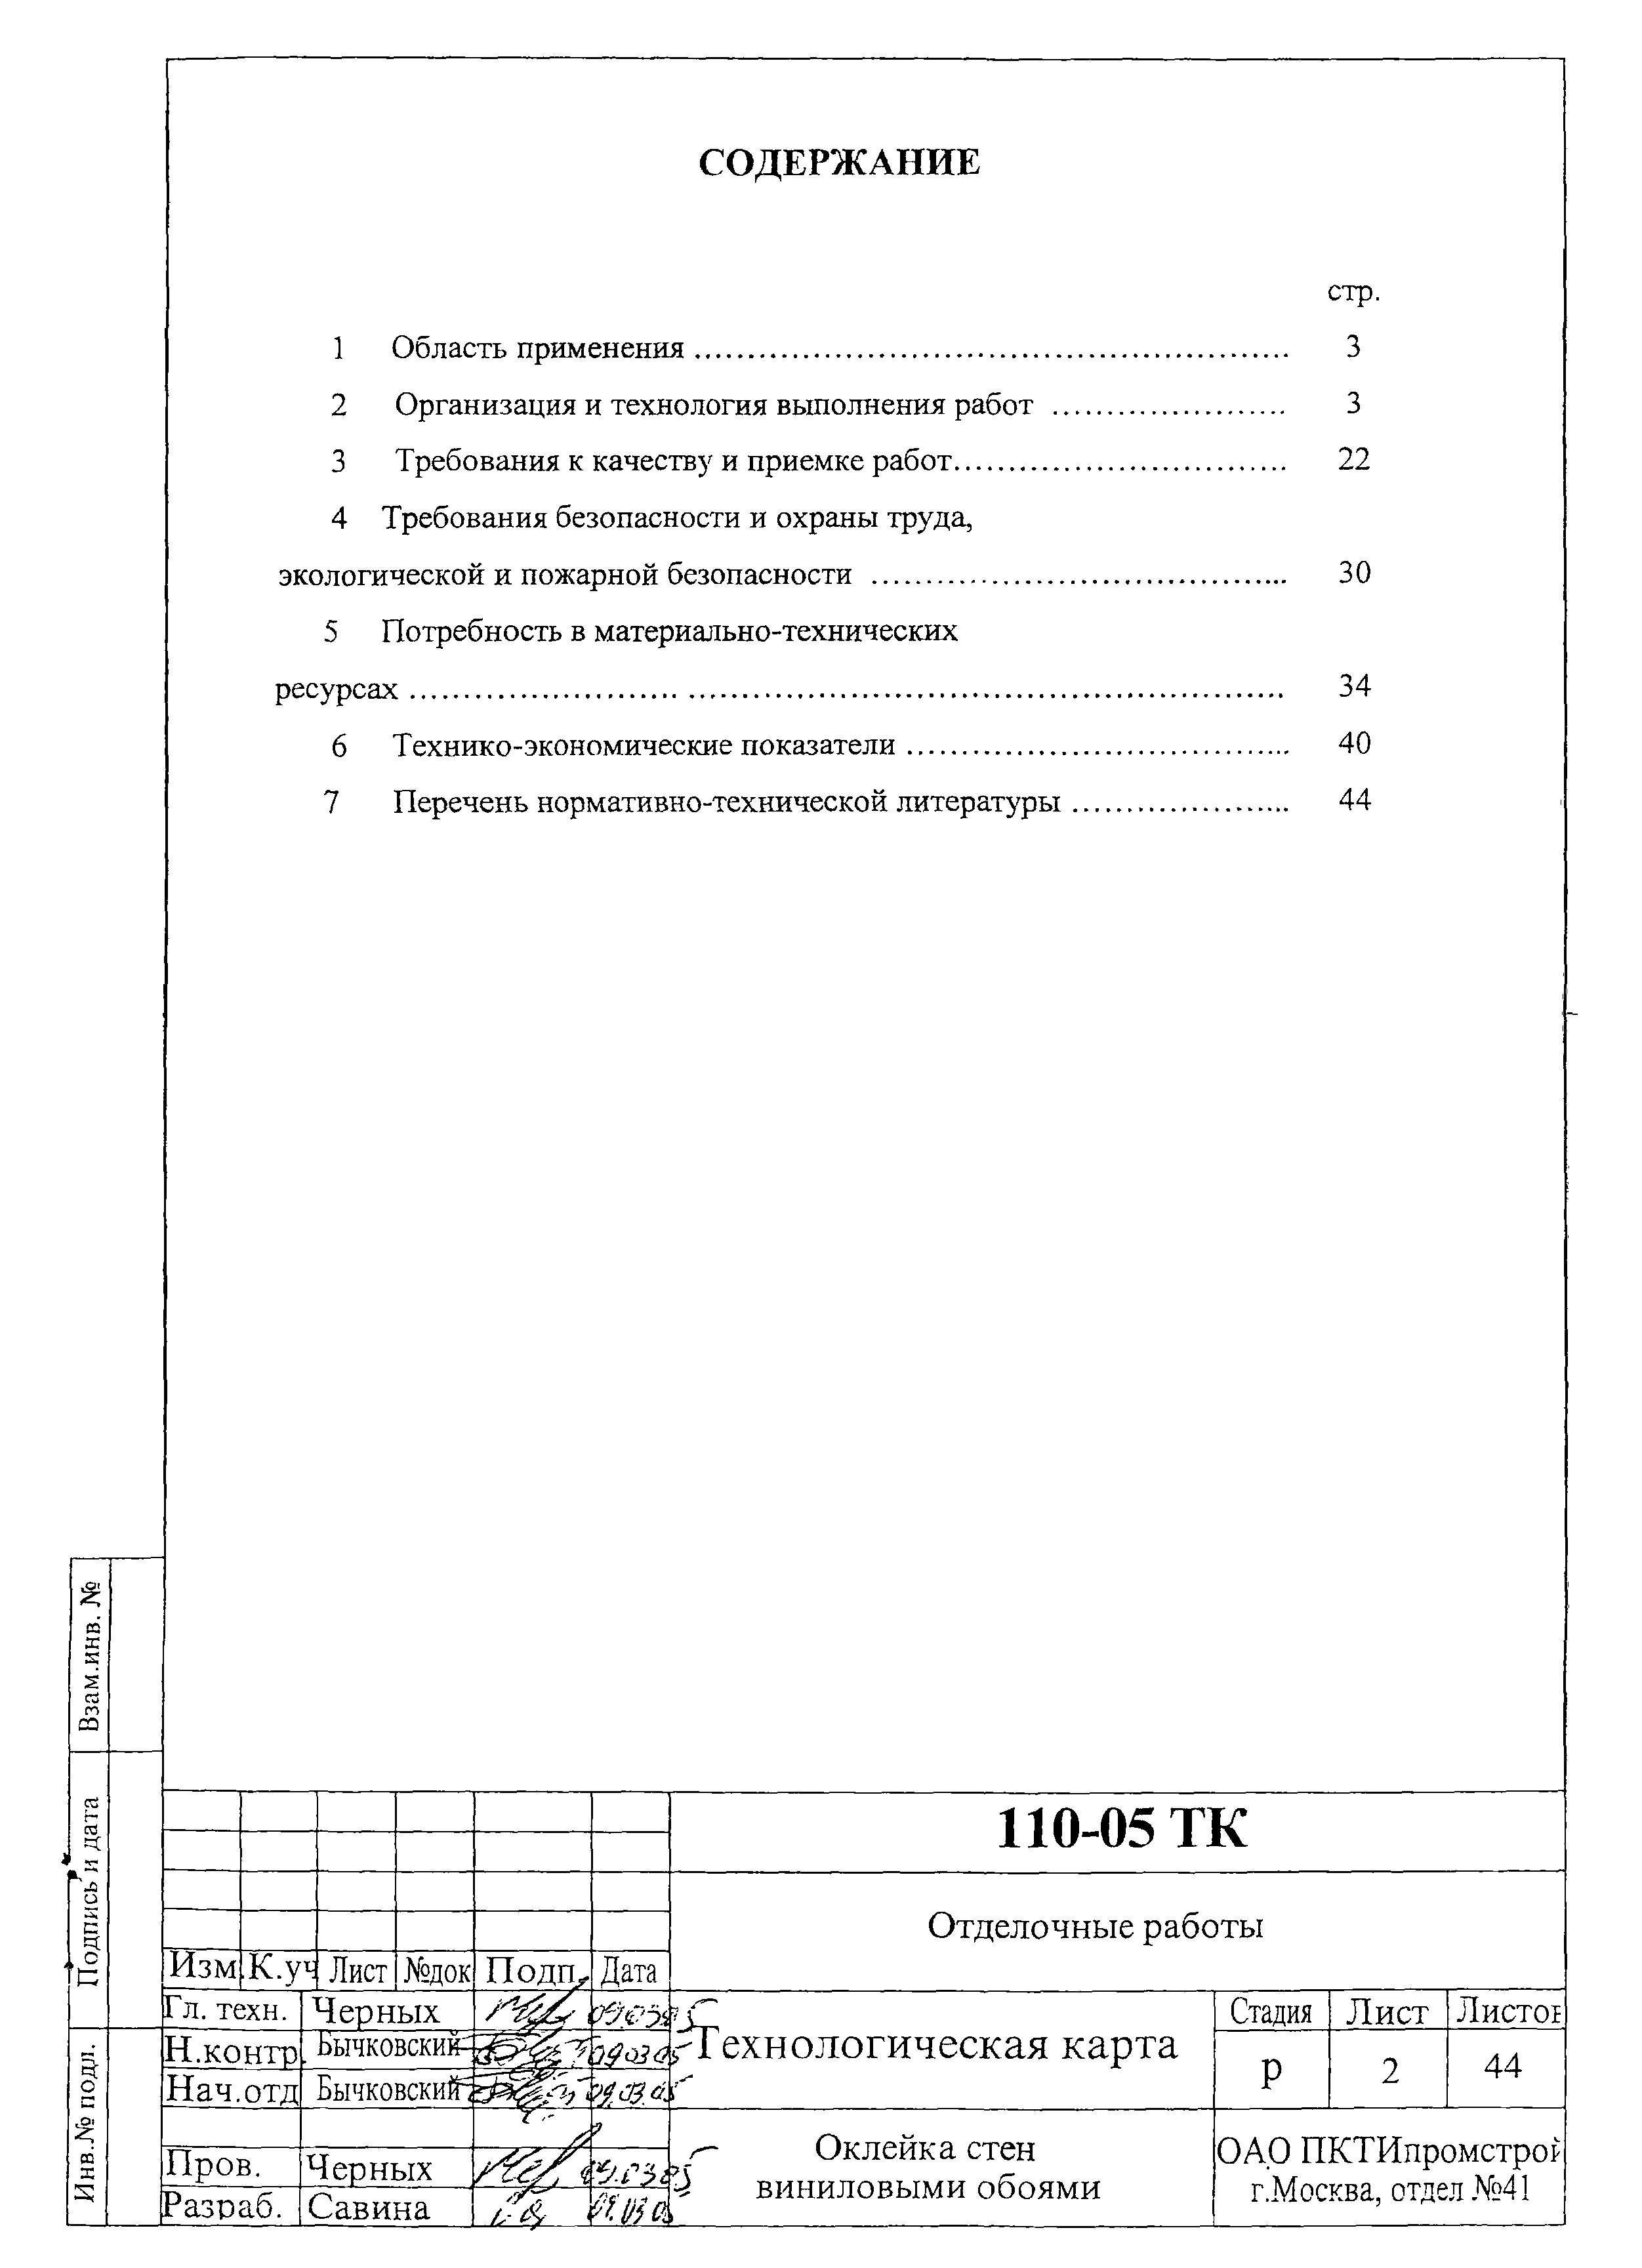 Технологическая карта 110-05 ТК